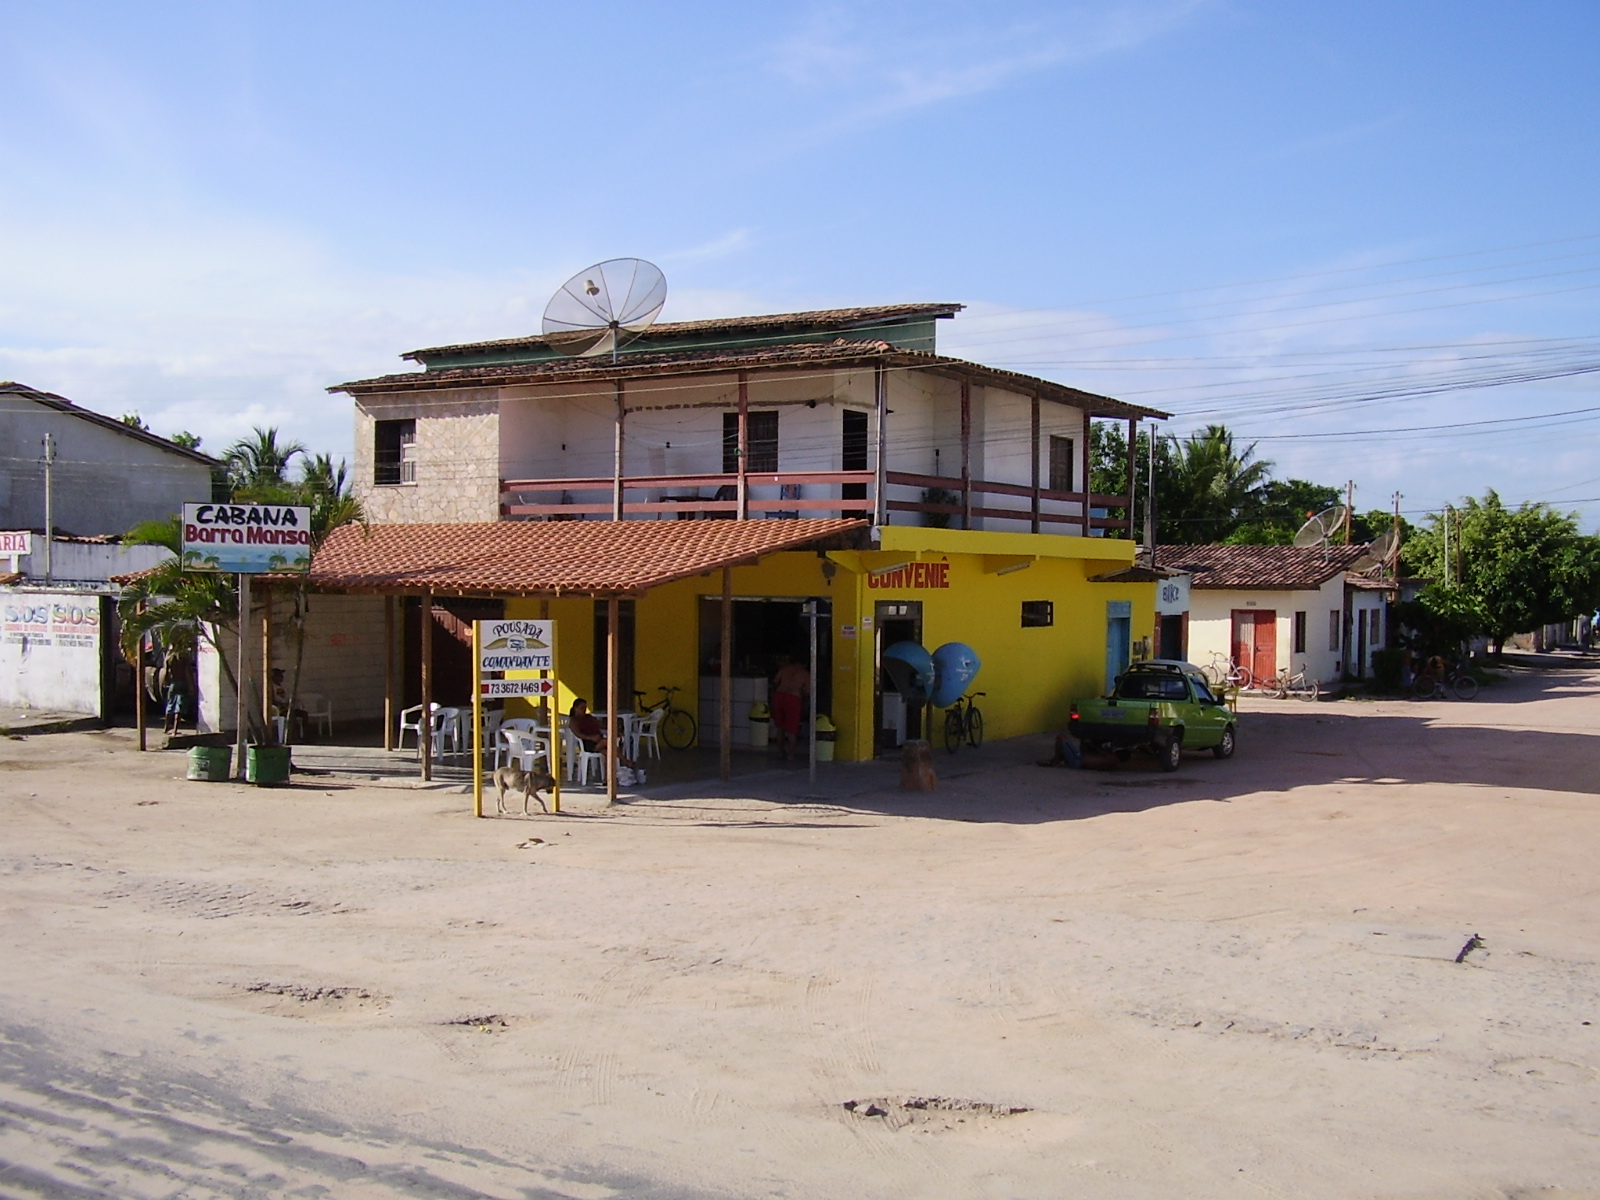 "Pousada" (small hotel) in Cabrália